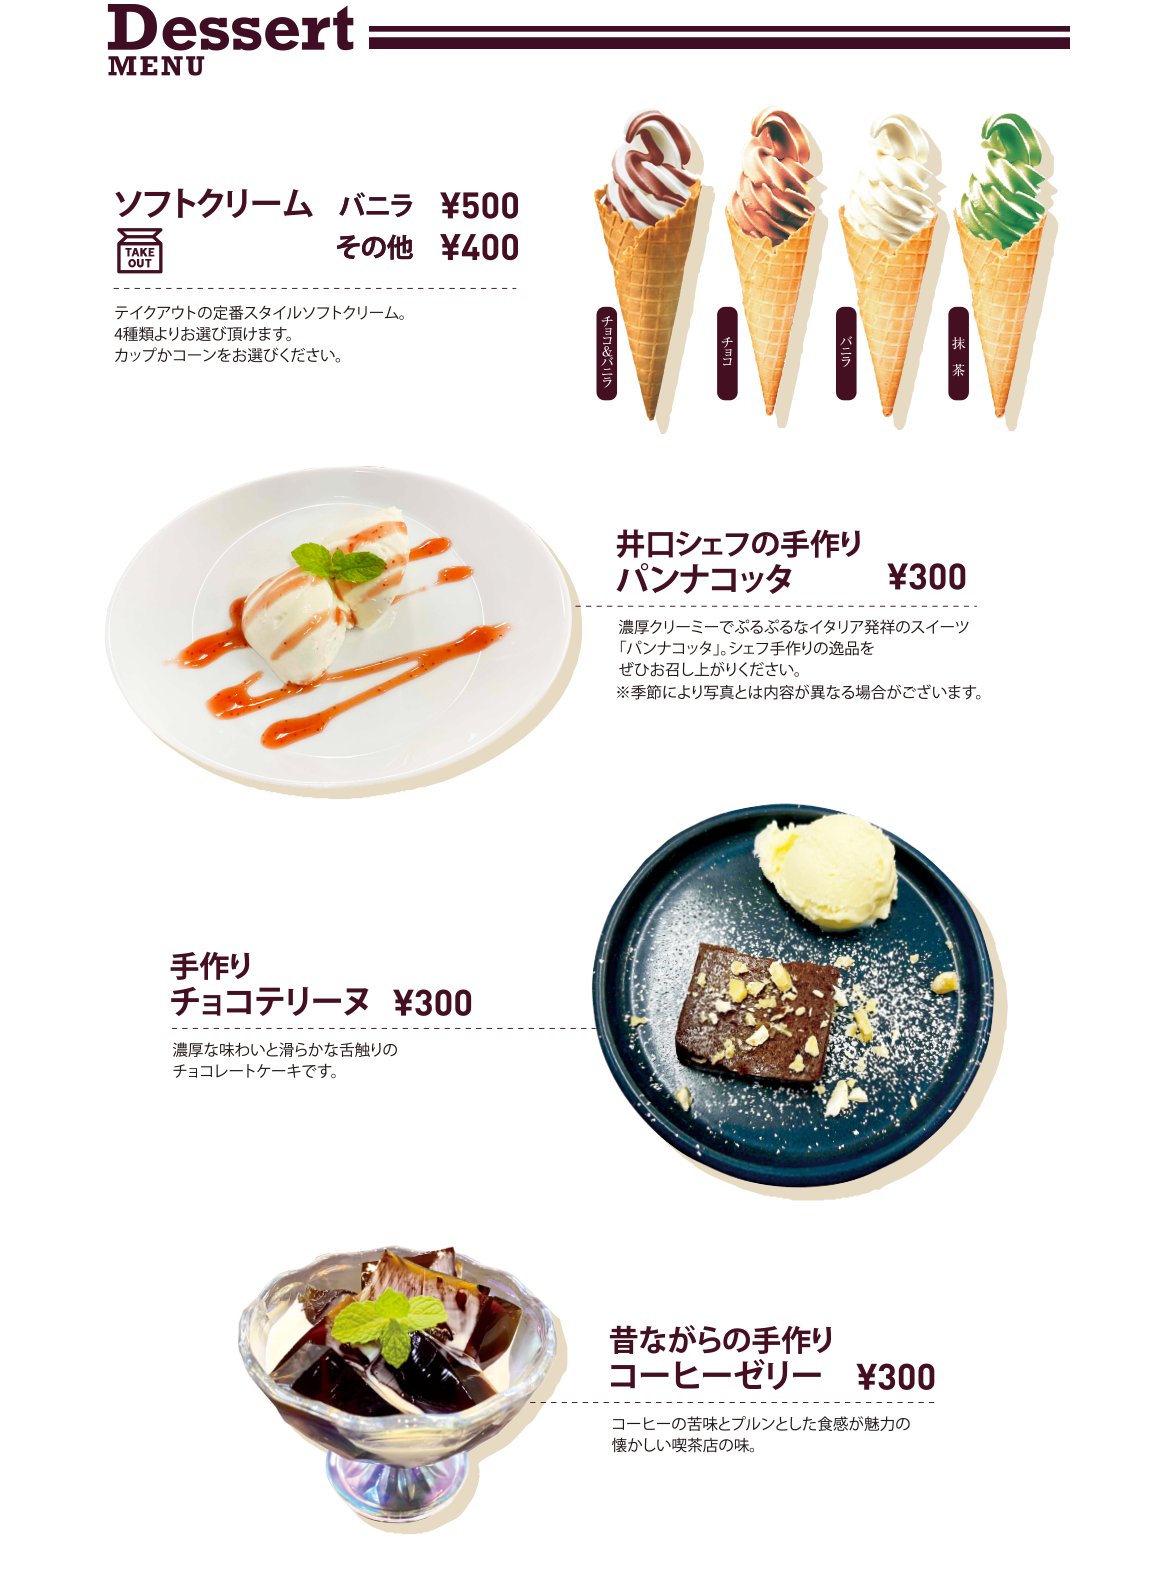 Dessert MENU フレンチトースト ソフトクリーム 井口シェフの手作りパンナコッタ